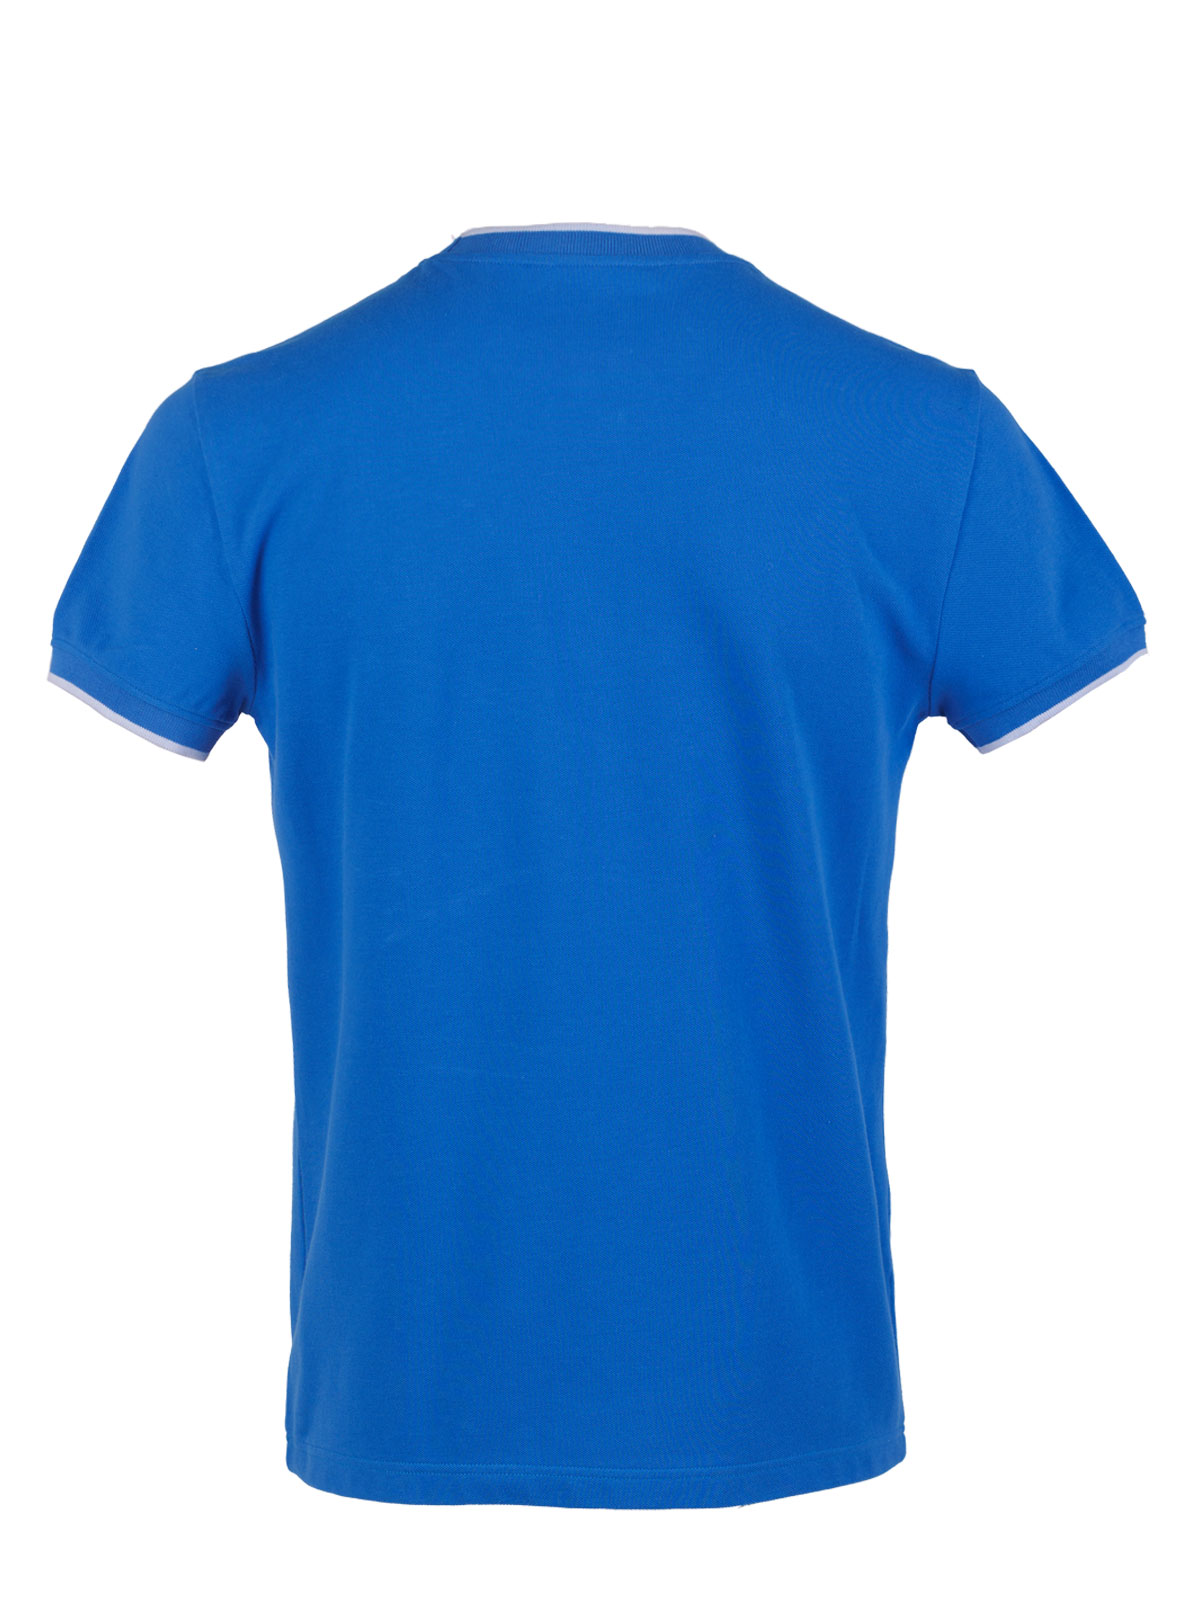 Ανδρική μπλούζα με στάμπα paisley - 95374 € 27.56 img2